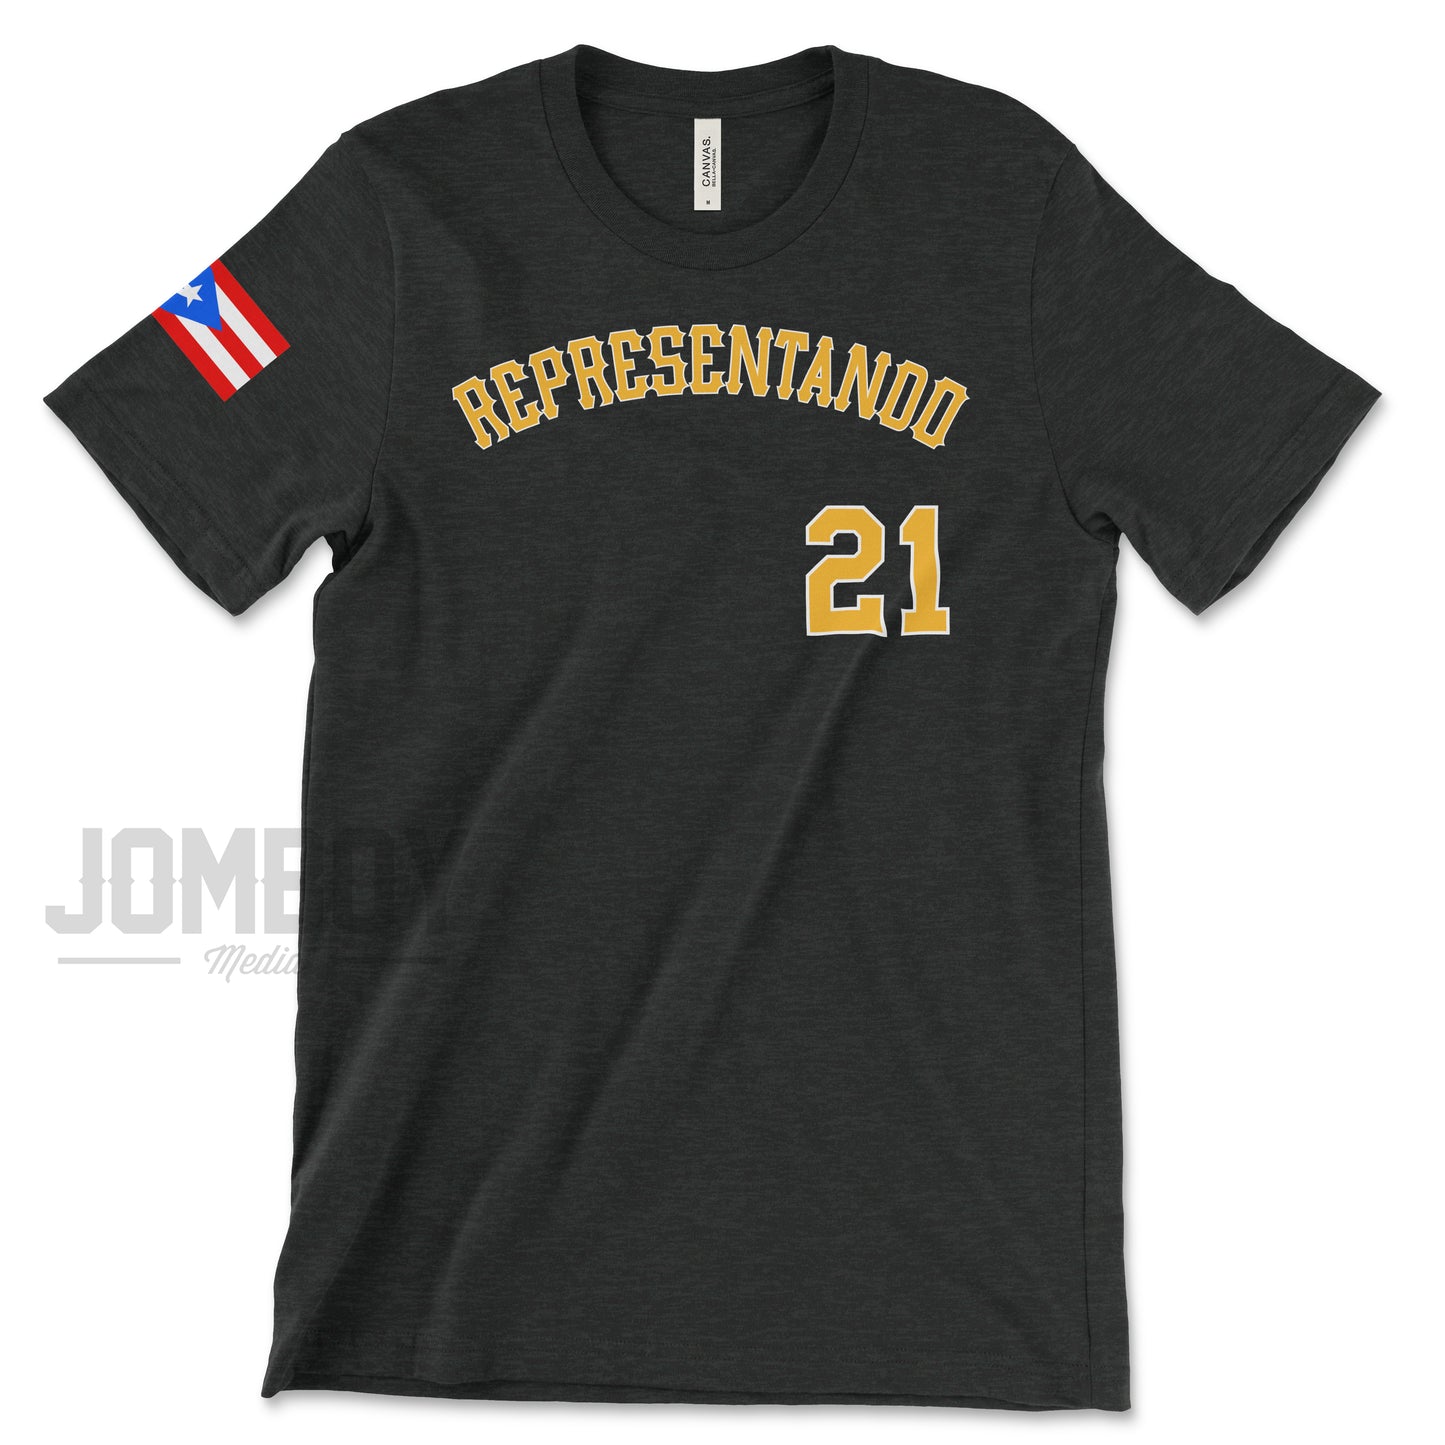 Representando 21 | Puerto Rico | T-Shirt